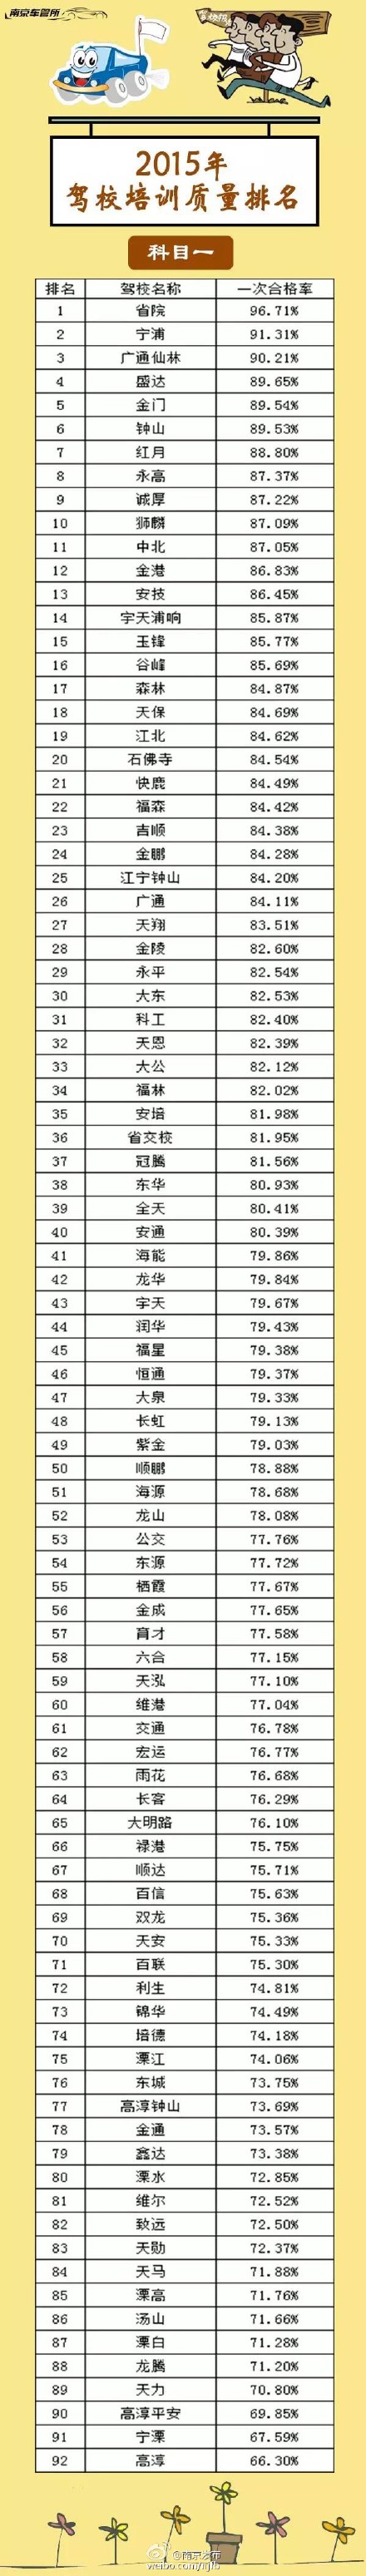 南京2020驾校排名_2020年全国高校排名来了!南京这些学校出名了